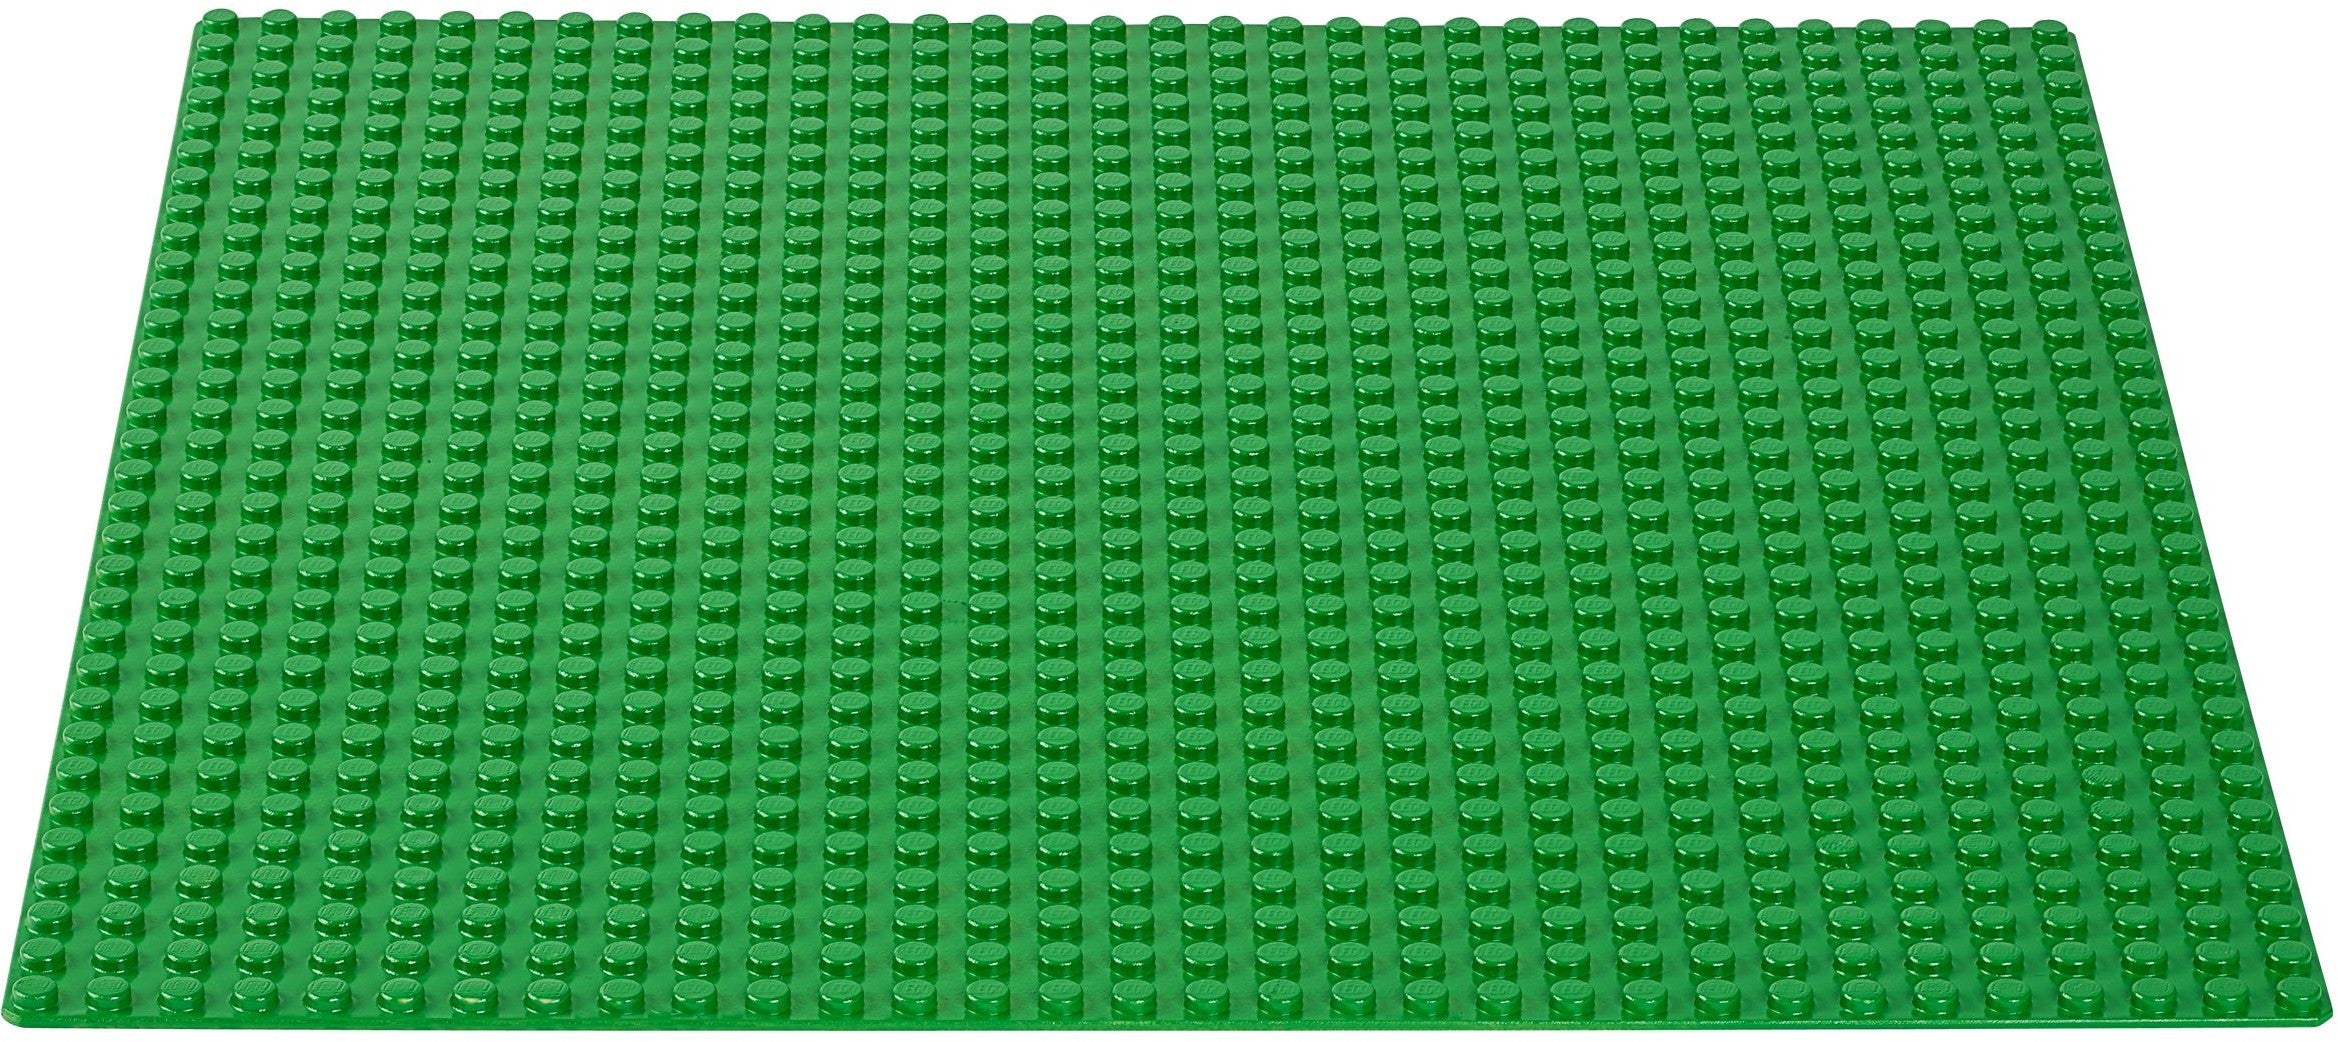 Green LEGO Baseplate - 32 x 32 Studs (10700)